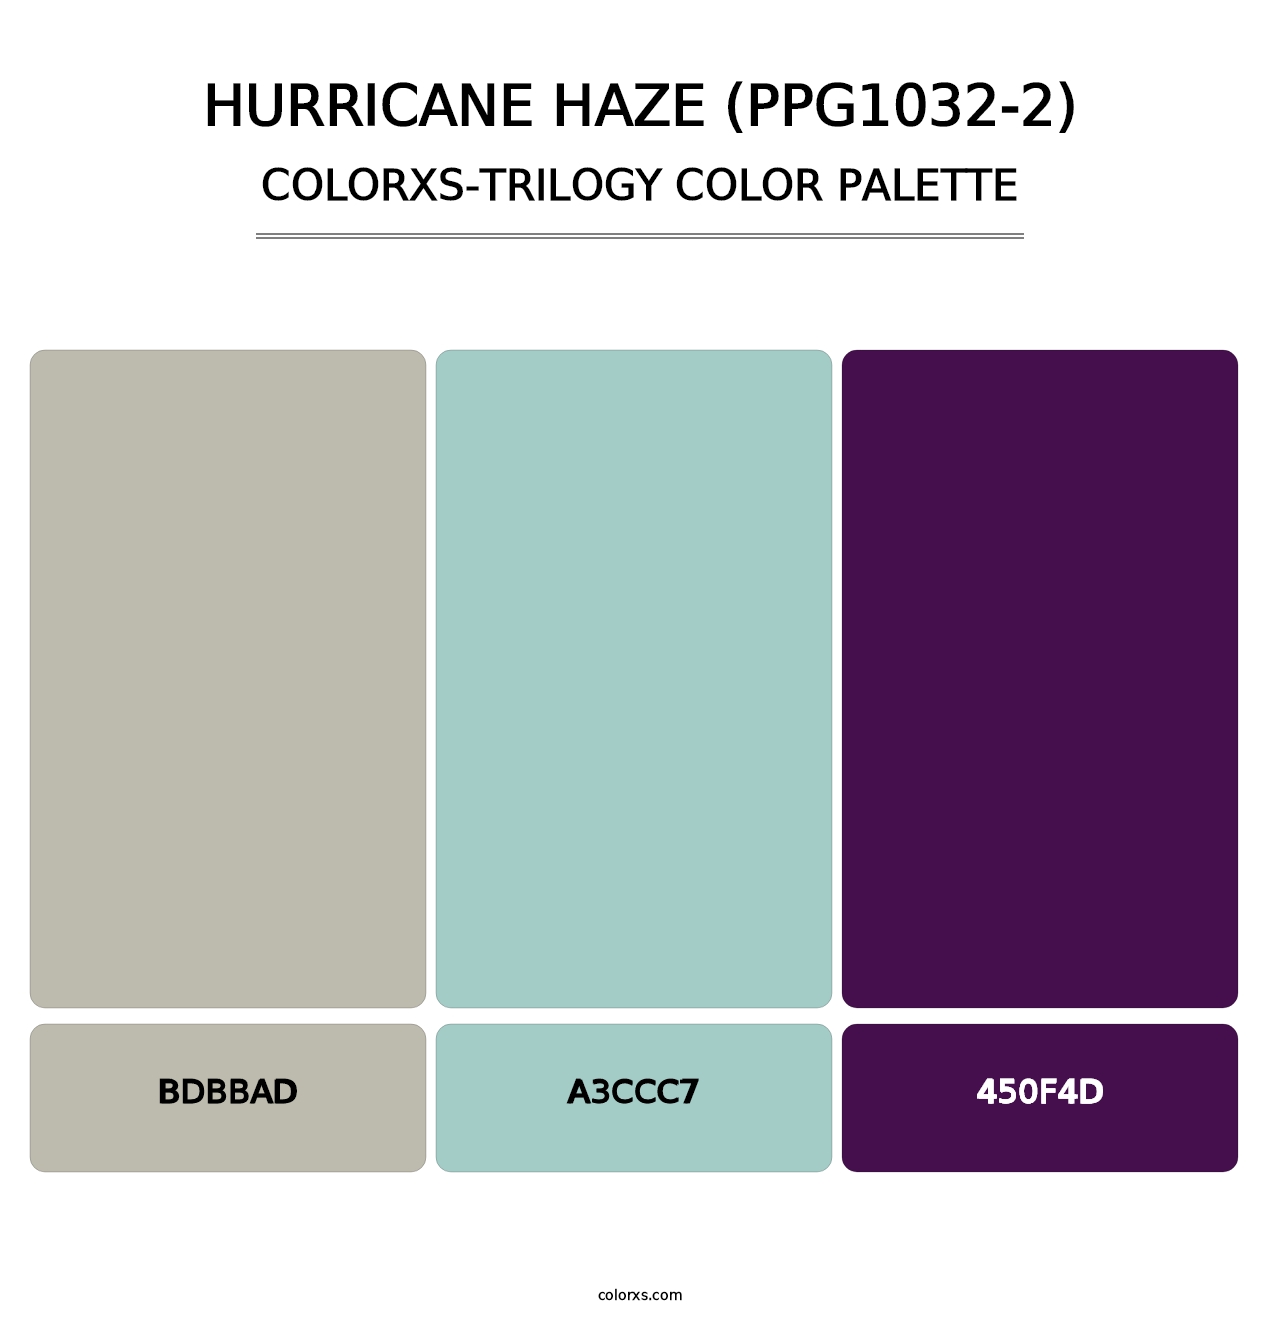 Hurricane Haze (PPG1032-2) - Colorxs Trilogy Palette